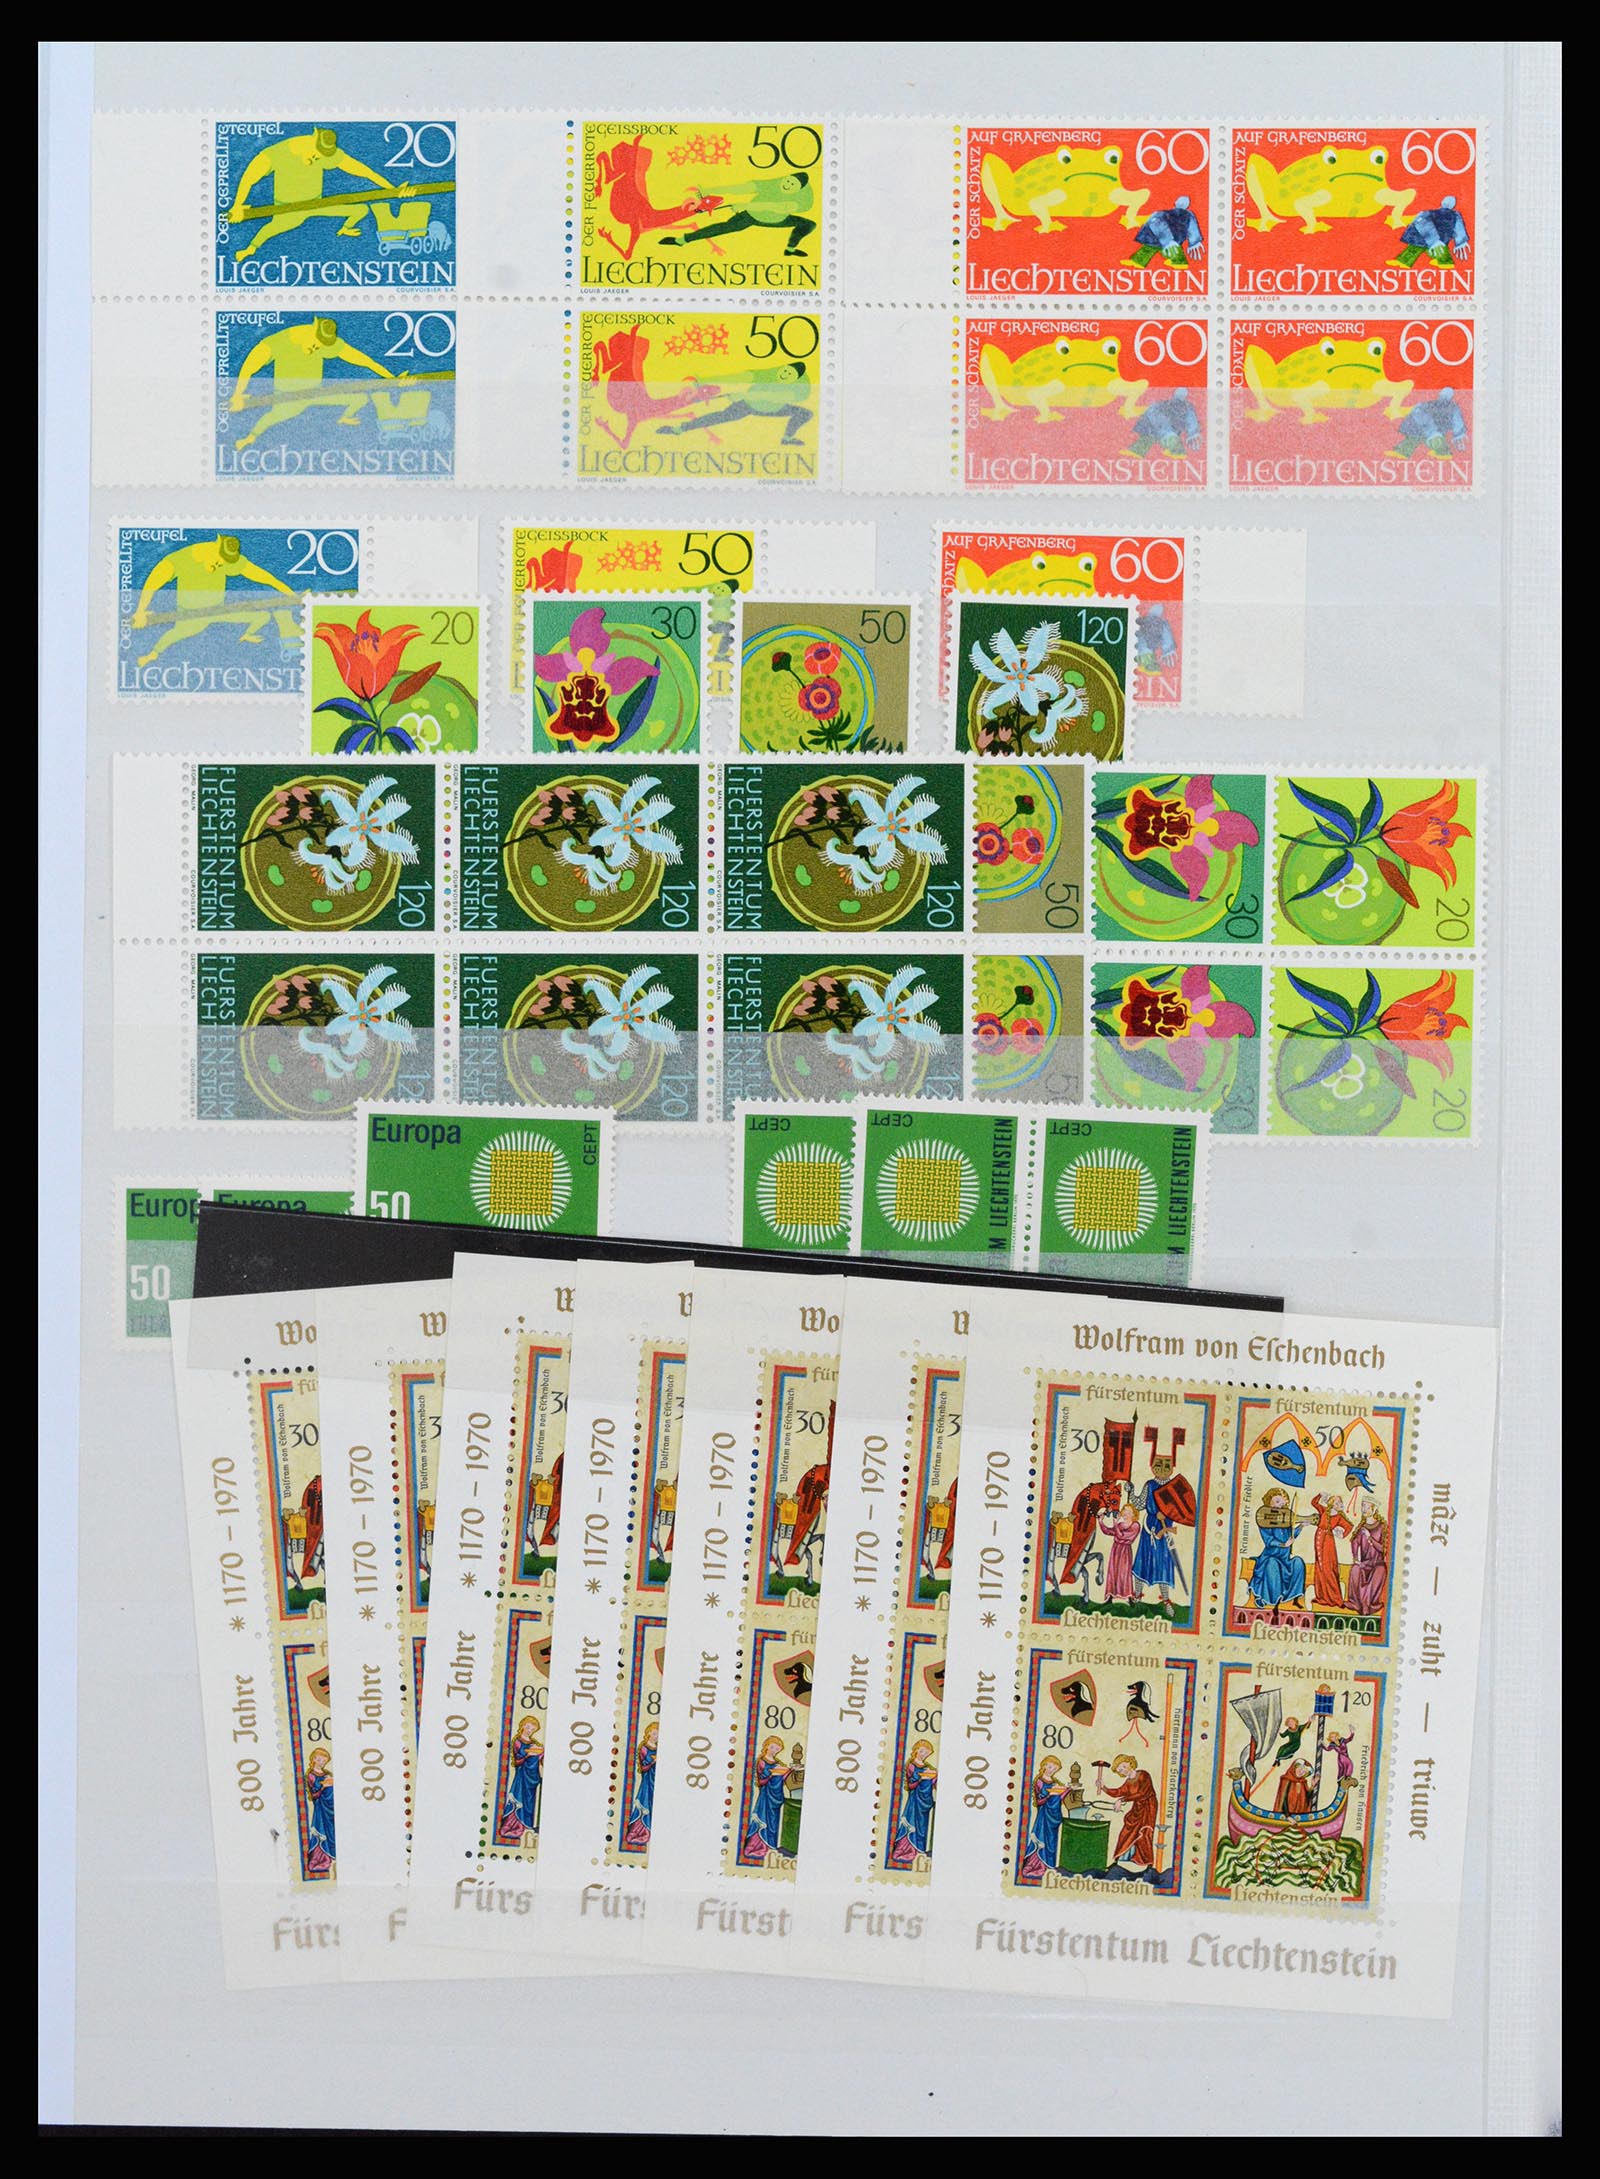 37261 022 - Stamp collection 37261 Liechtenstein 1961-1995.